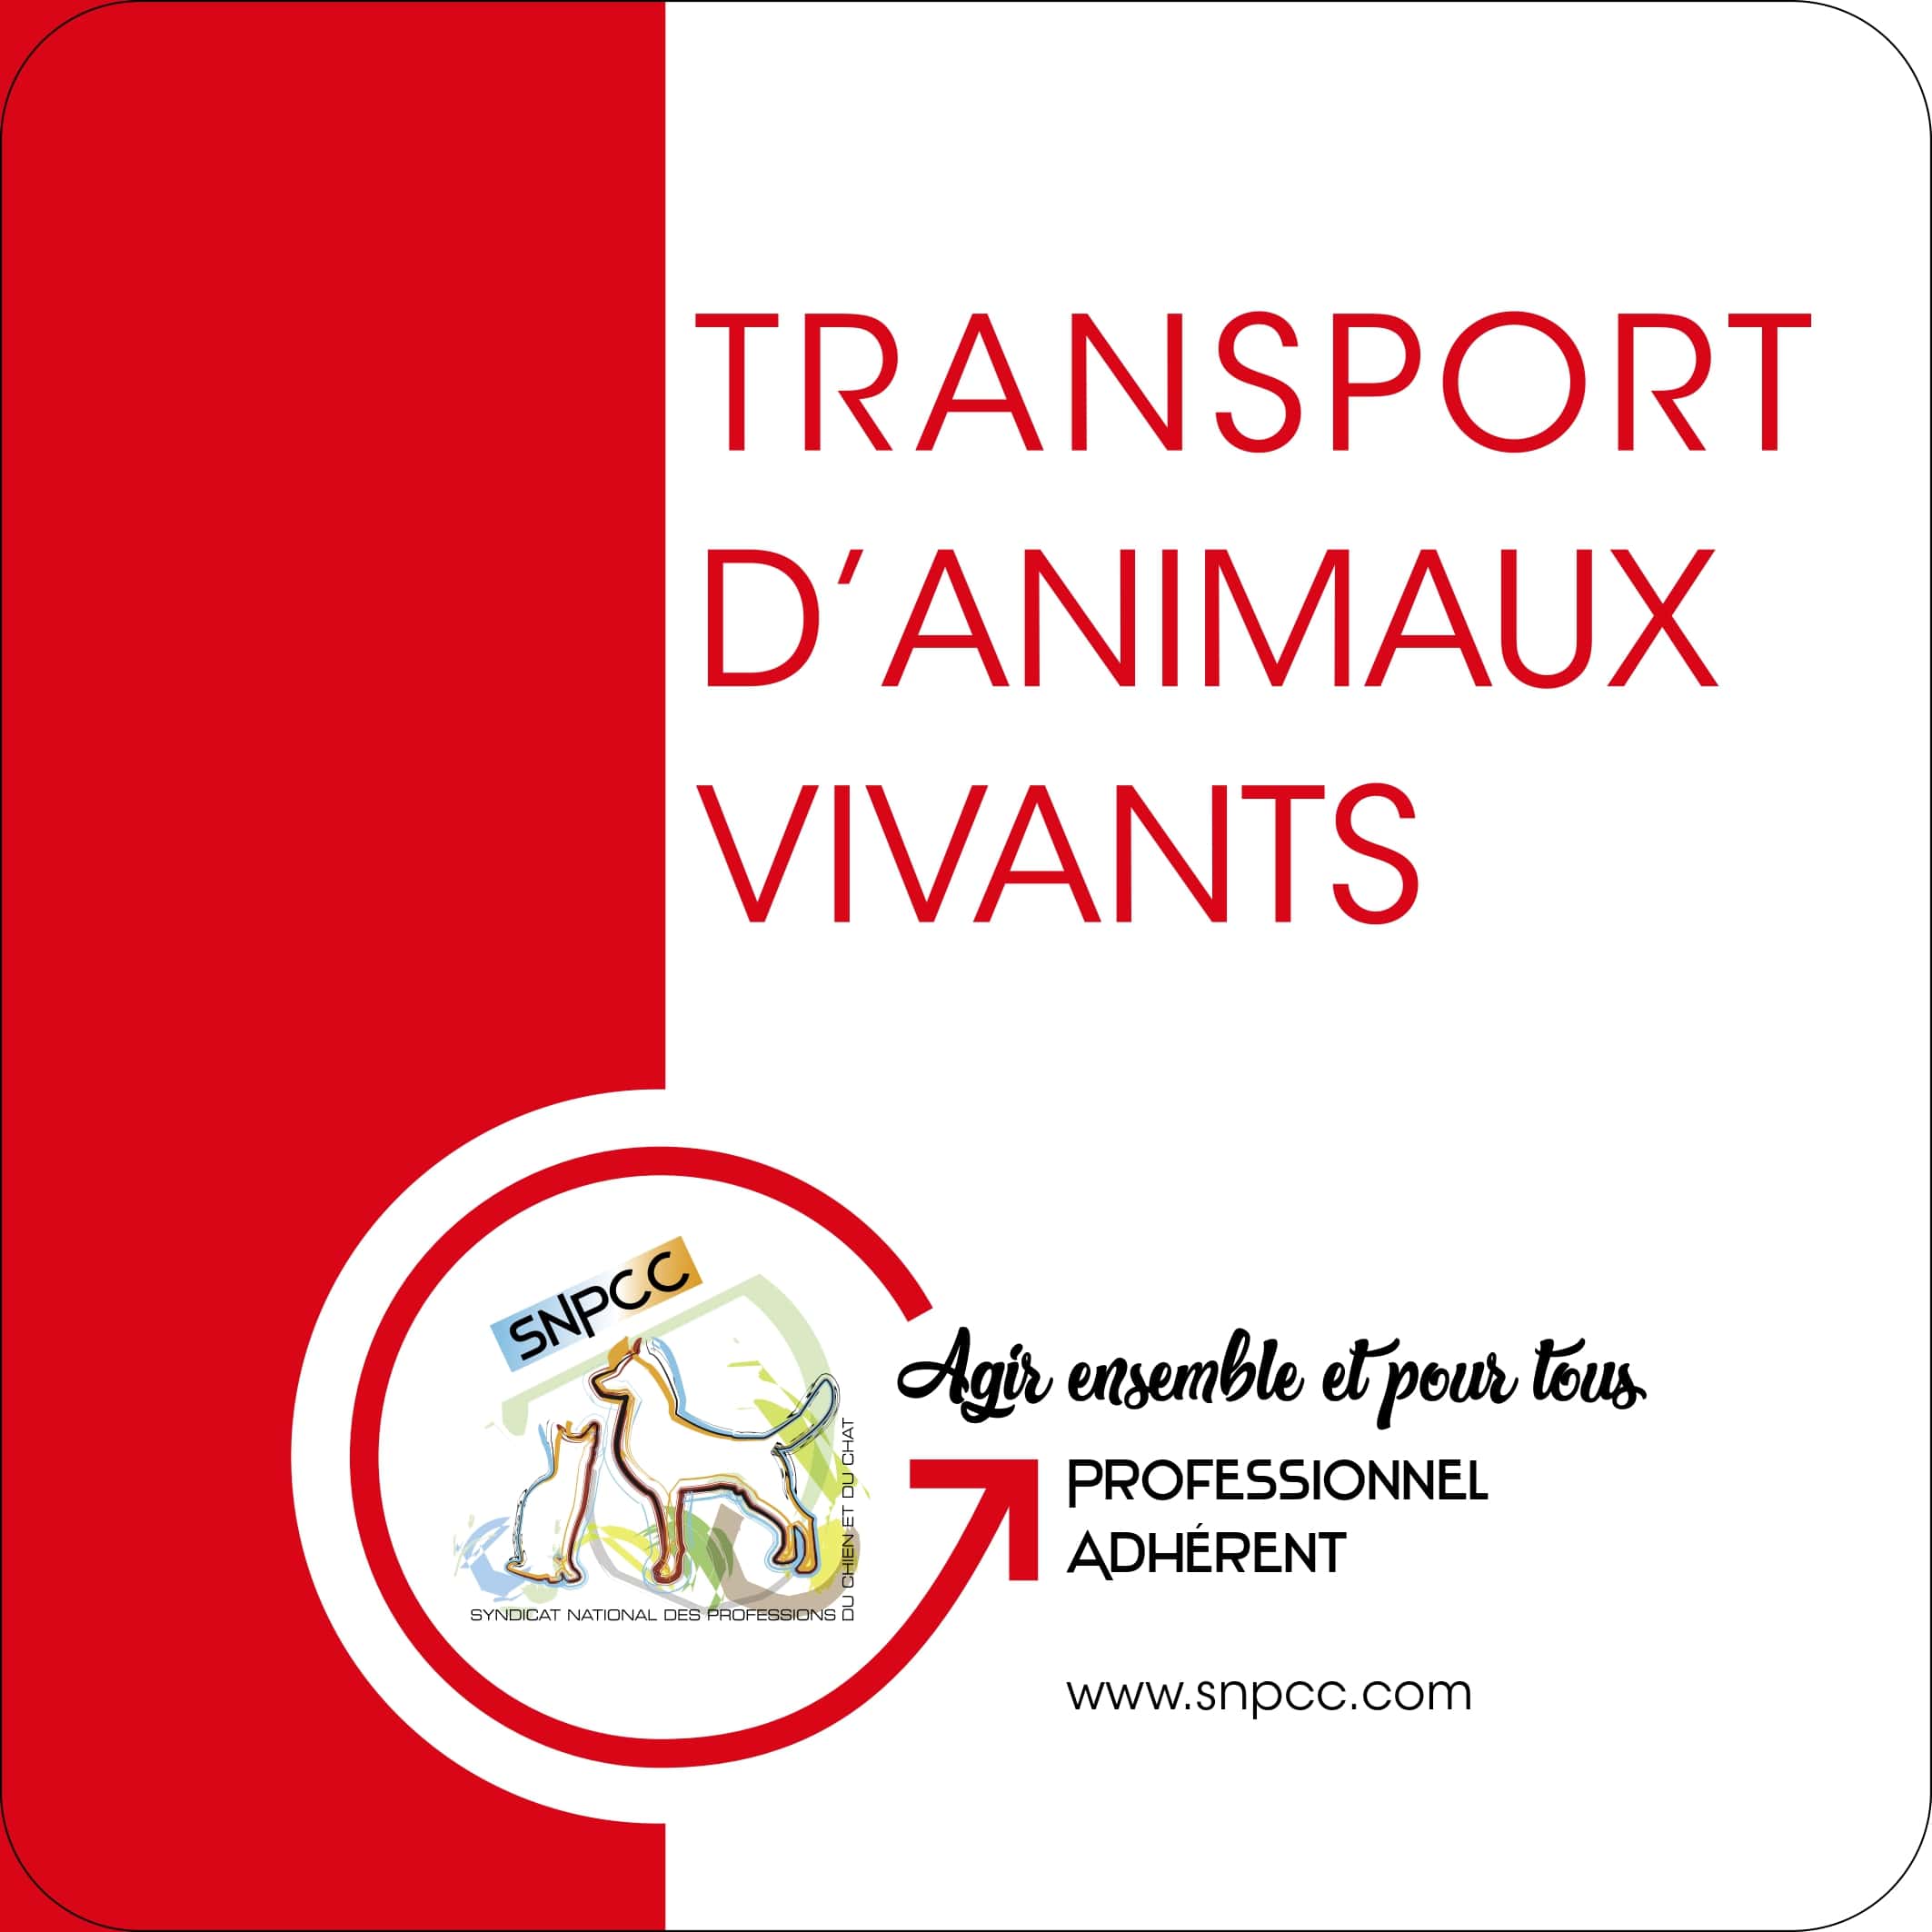 TRANSPORT D'ANIMAUX VIVANTS MAGNET